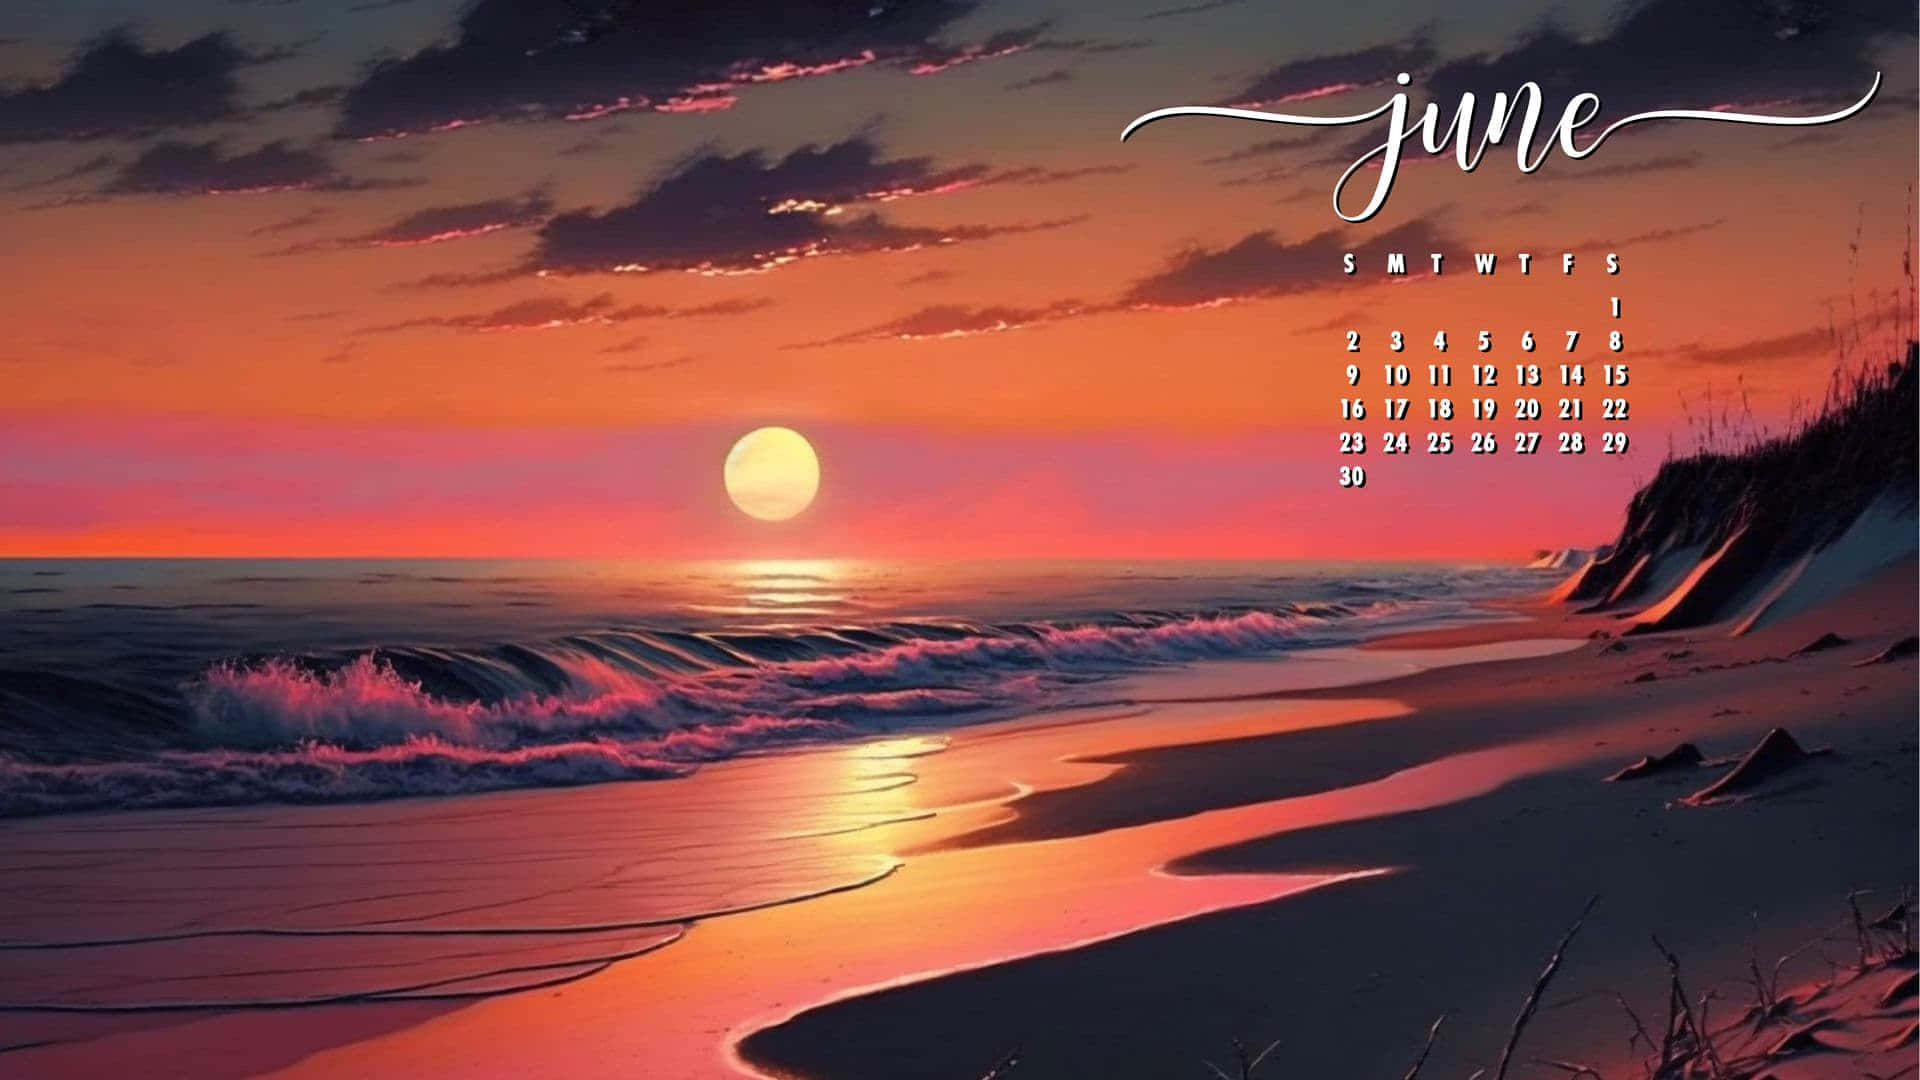 June Beach Sunset Calendar Wallpaper Wallpaper